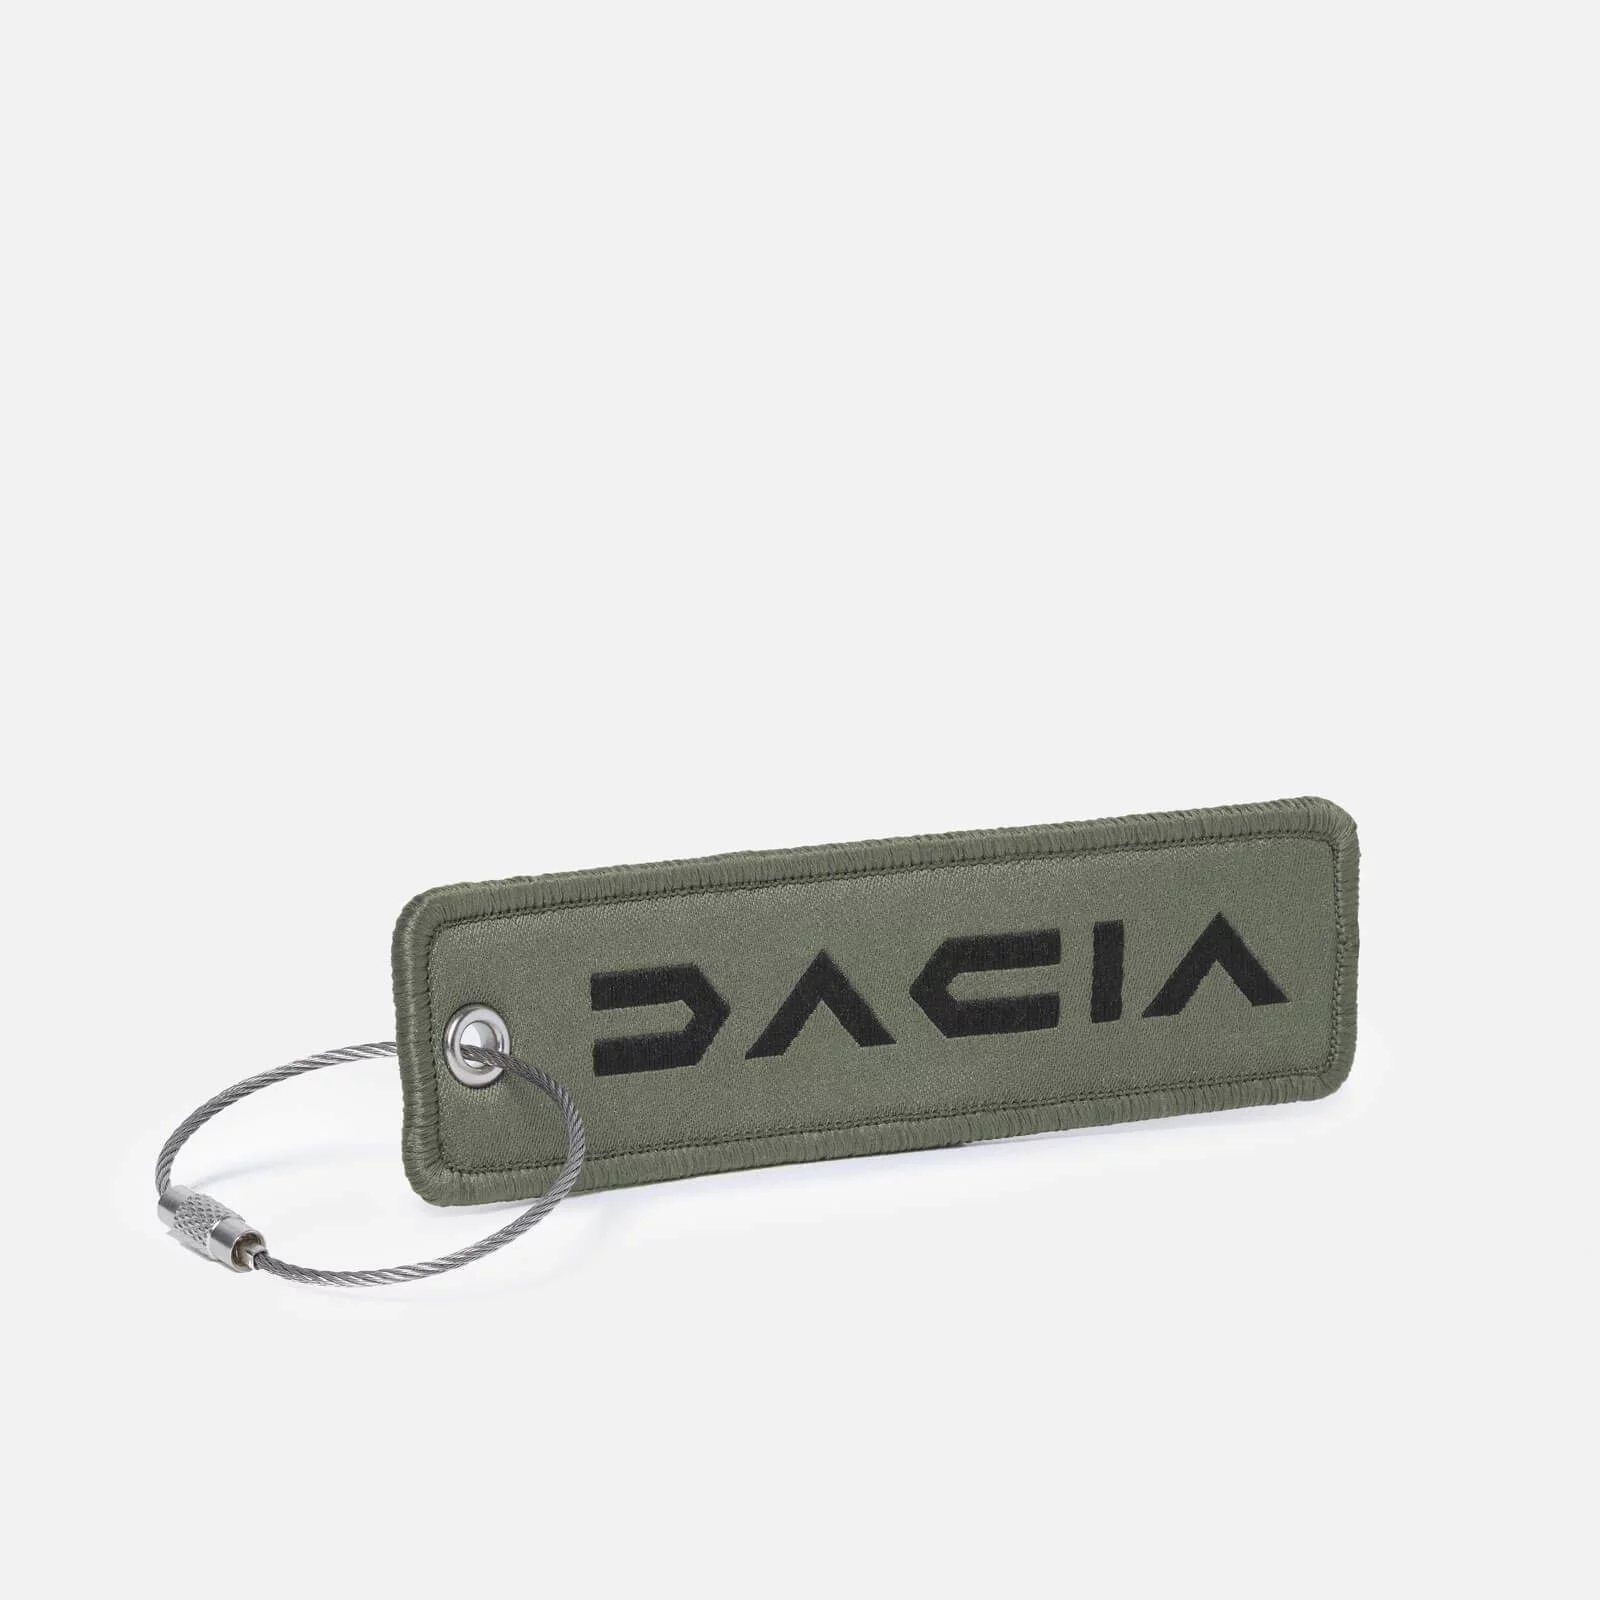 Schlüsselanhänger für Dacia Dokker günstig bestellen